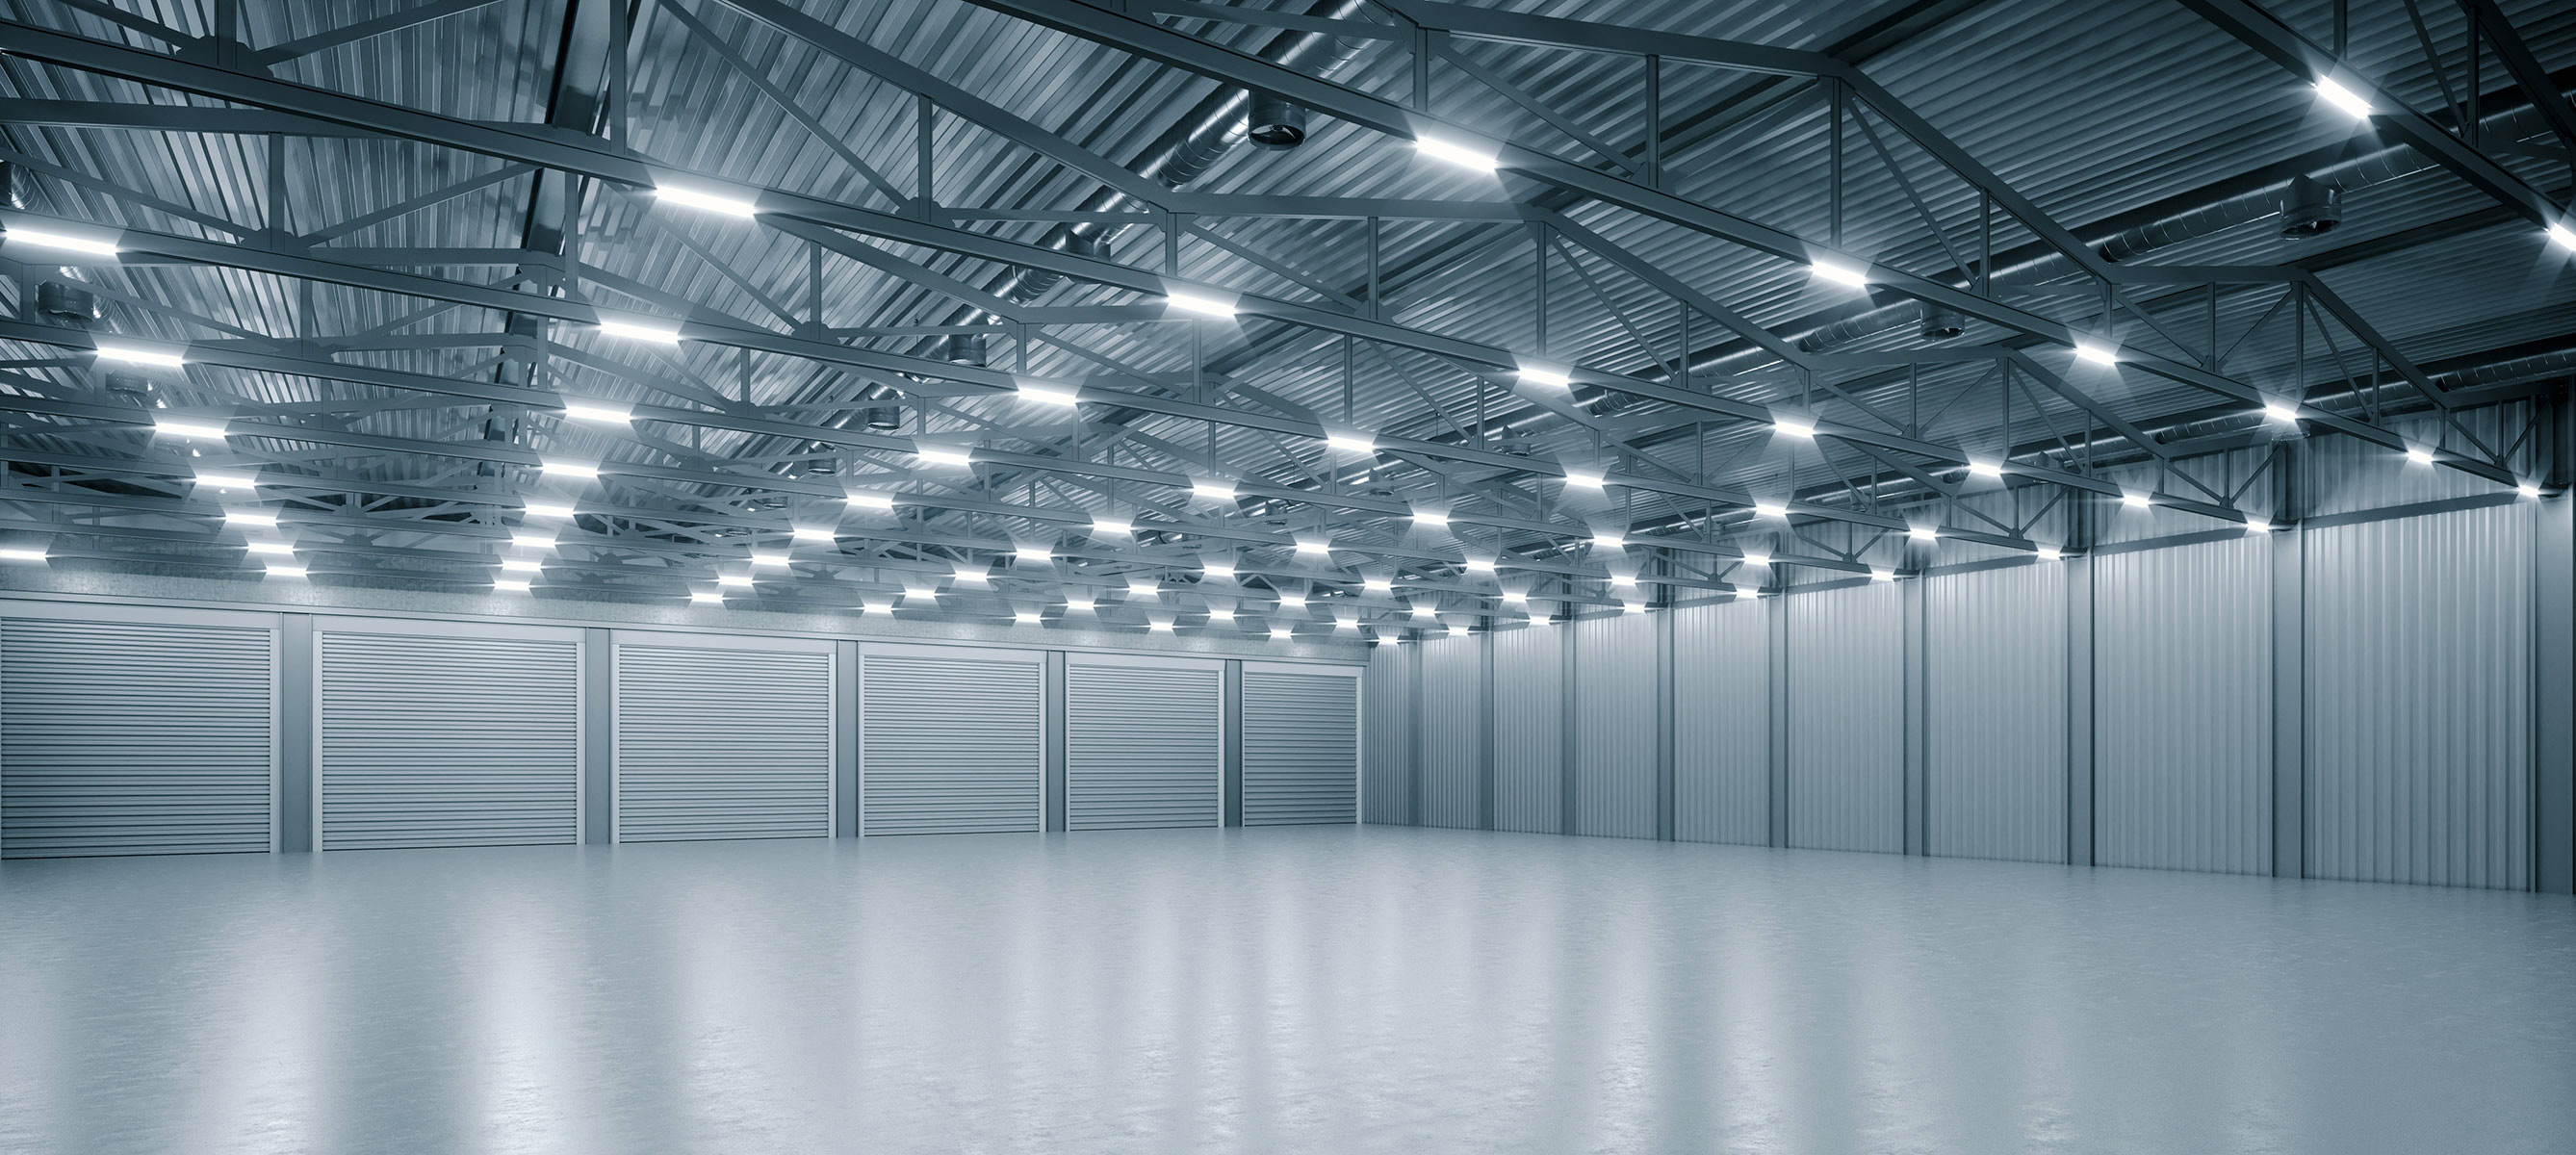 LED Beleuchtung für Stallungen aller Art, Hallen, Industrie-Fertigung, Schulen und kommunale Einrichtungen (Bauhof, Feuerwehr, etc.) 